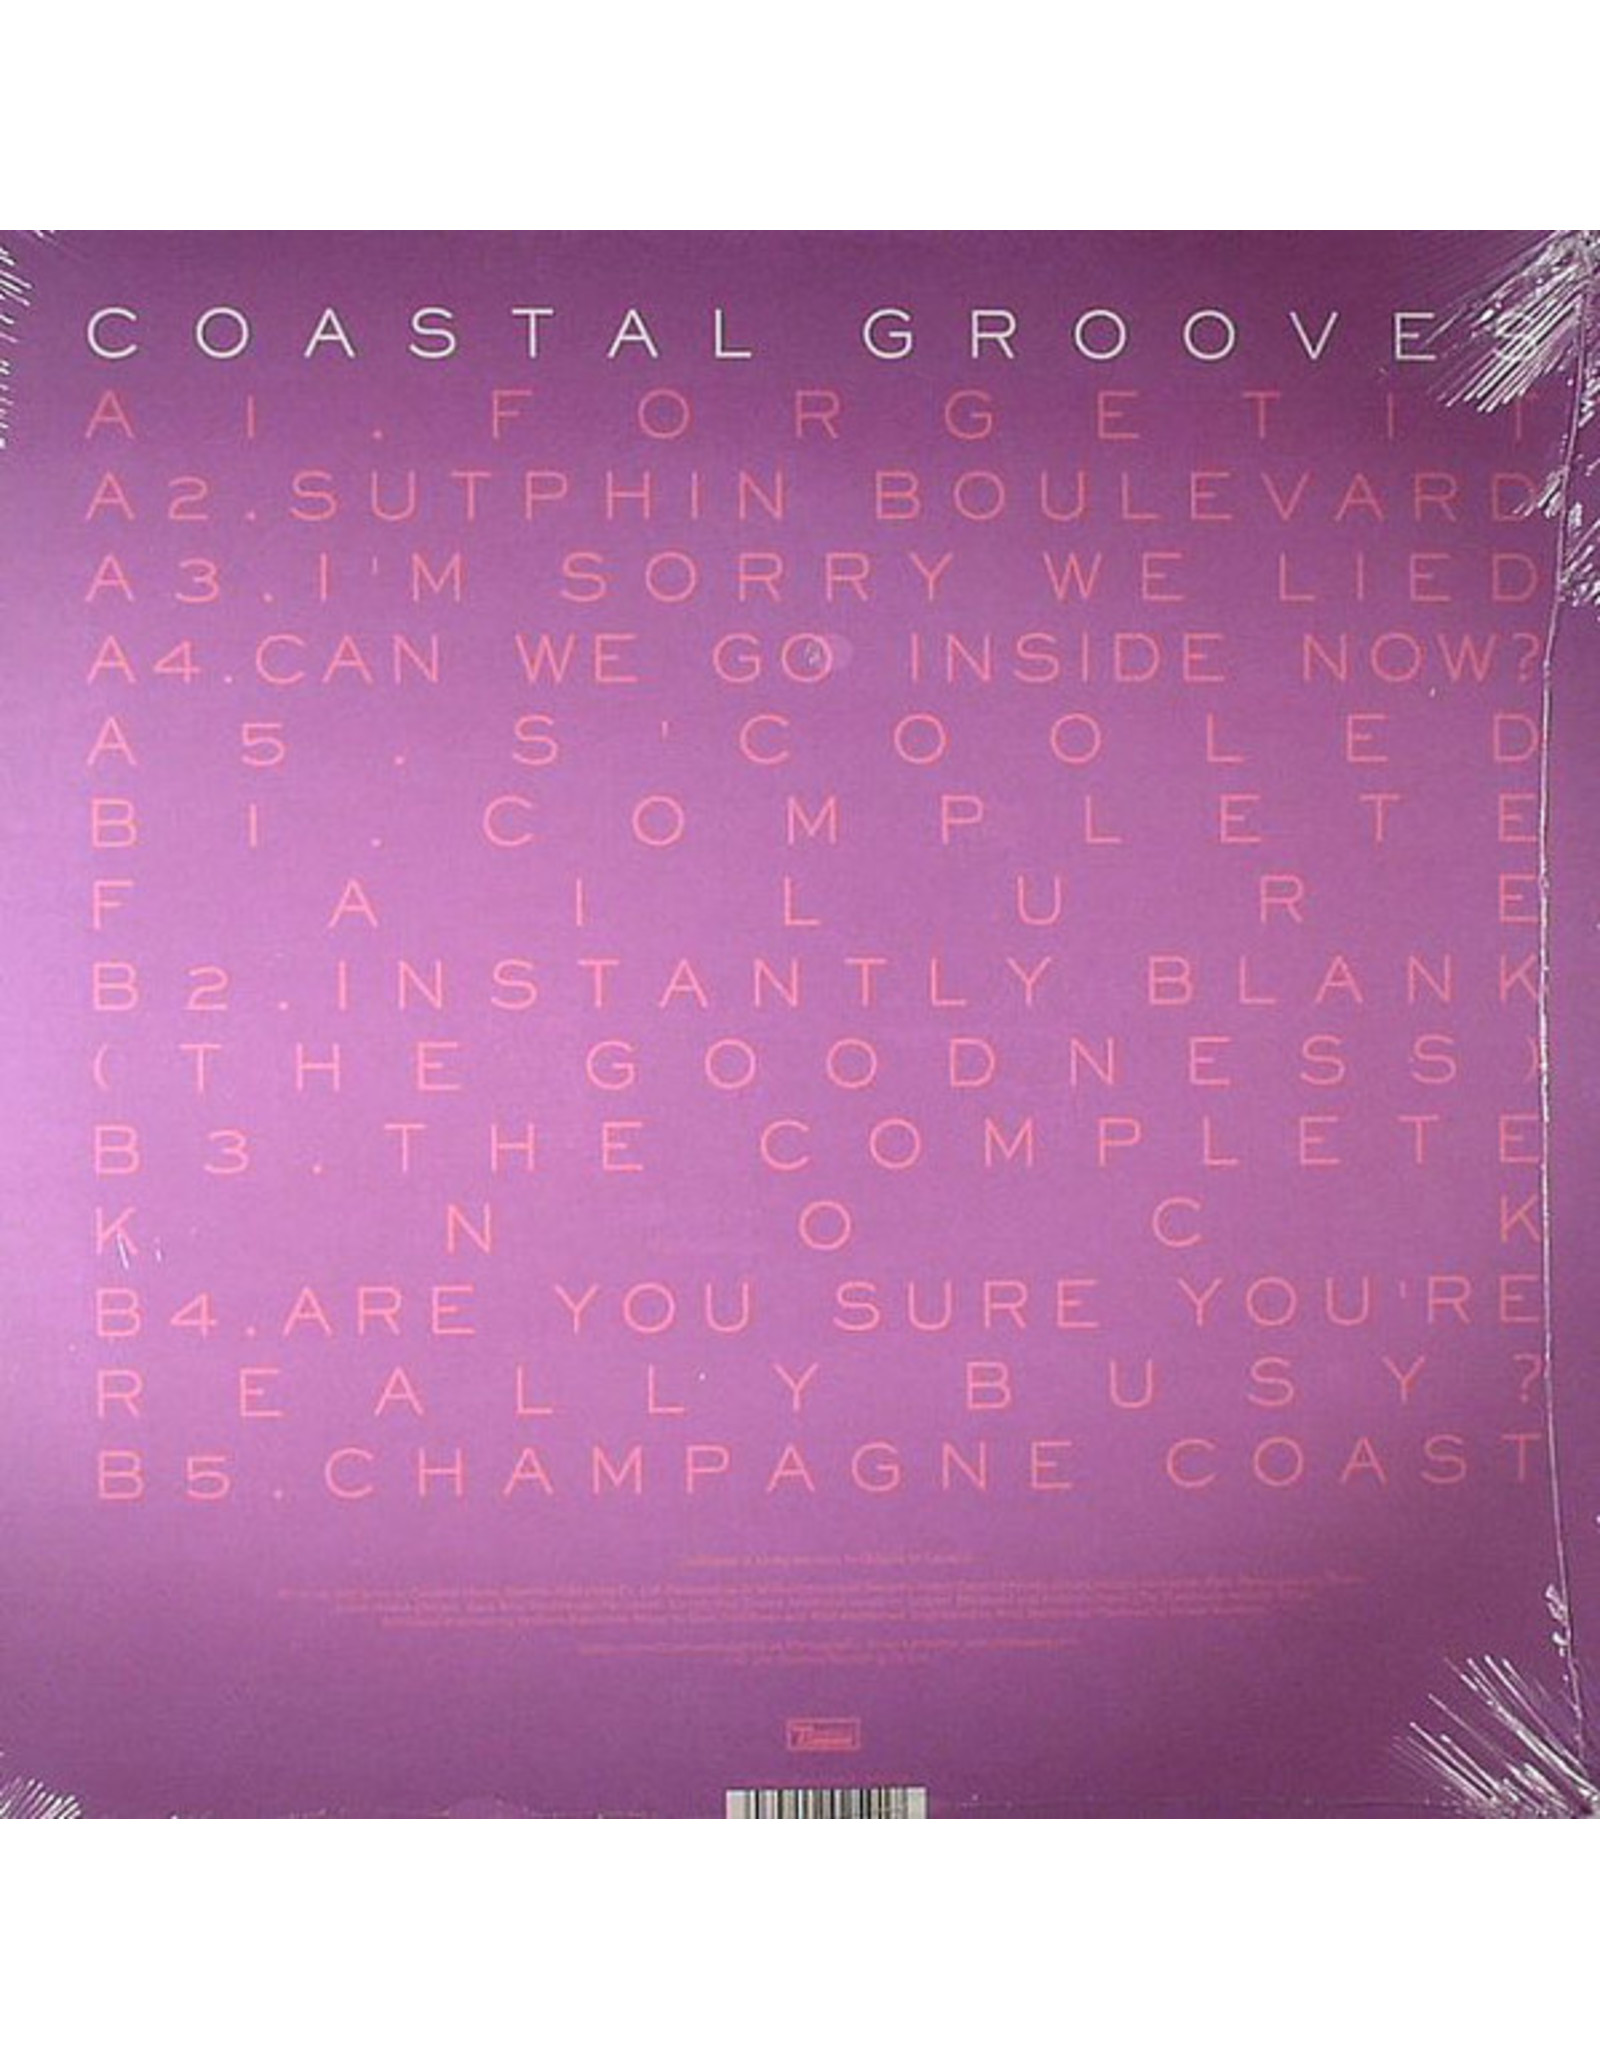 Blood Orange - Coastal Grooves